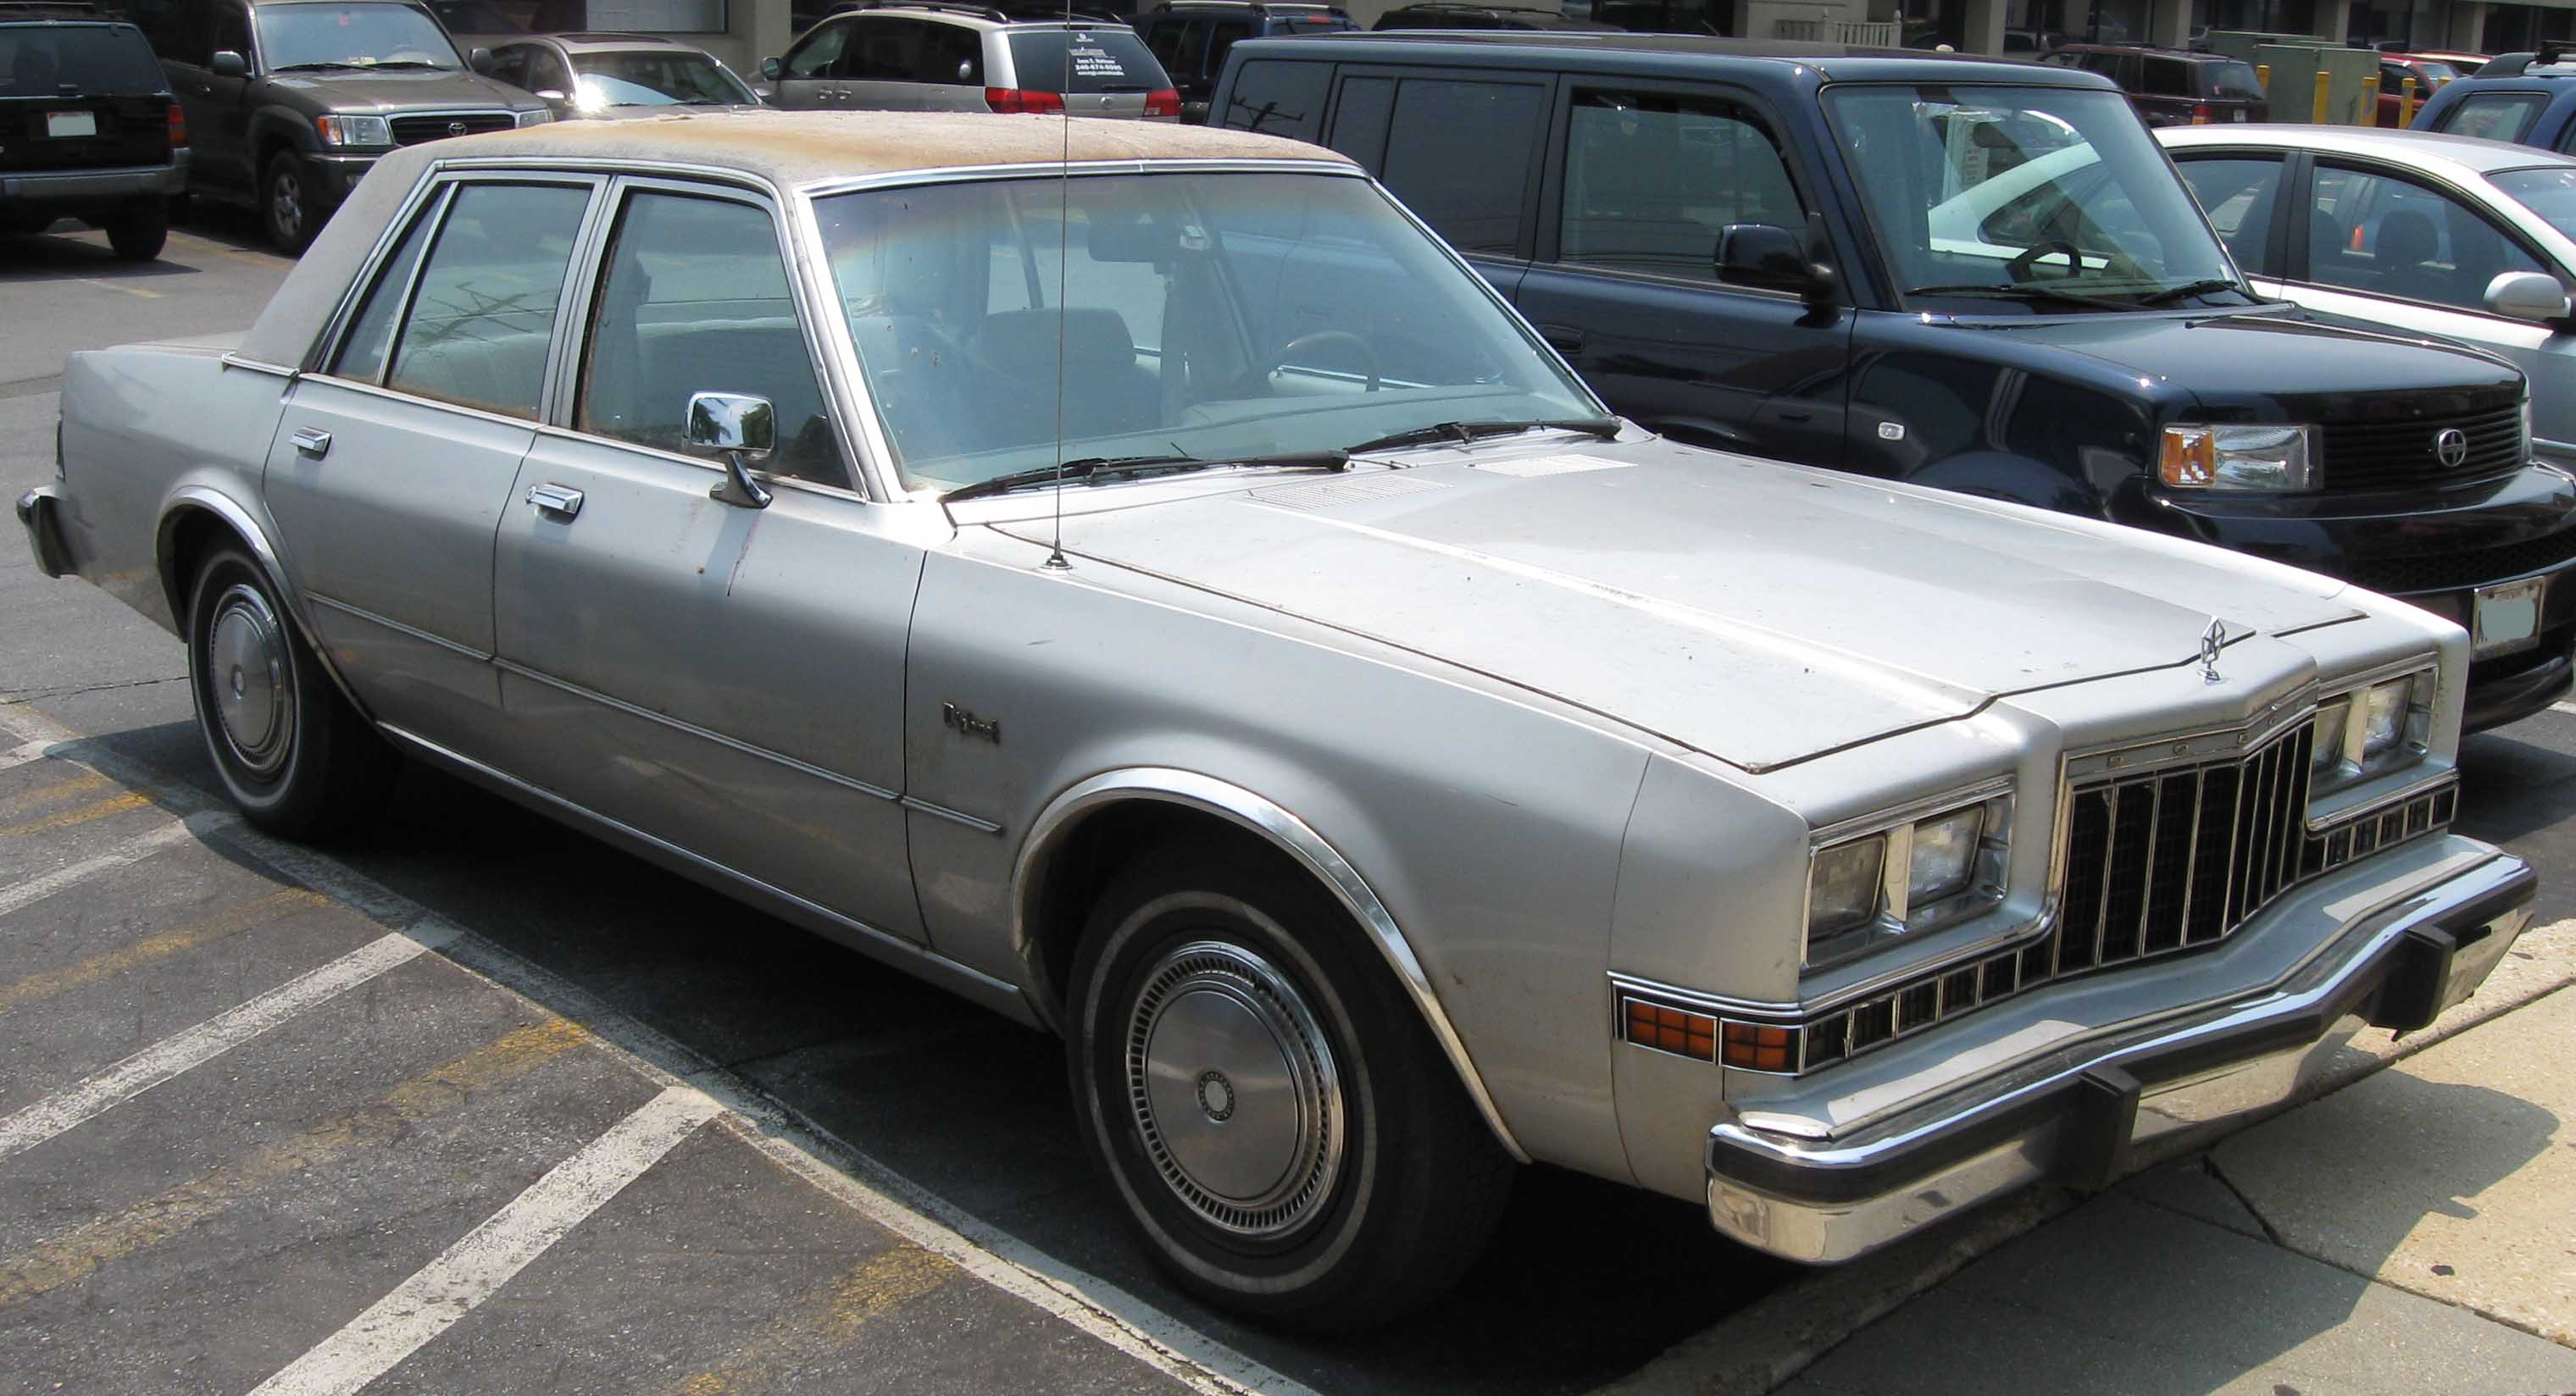 Dossier: 1980-1983 Dodge Diplomat 2.jpg - Wikimedia Commons